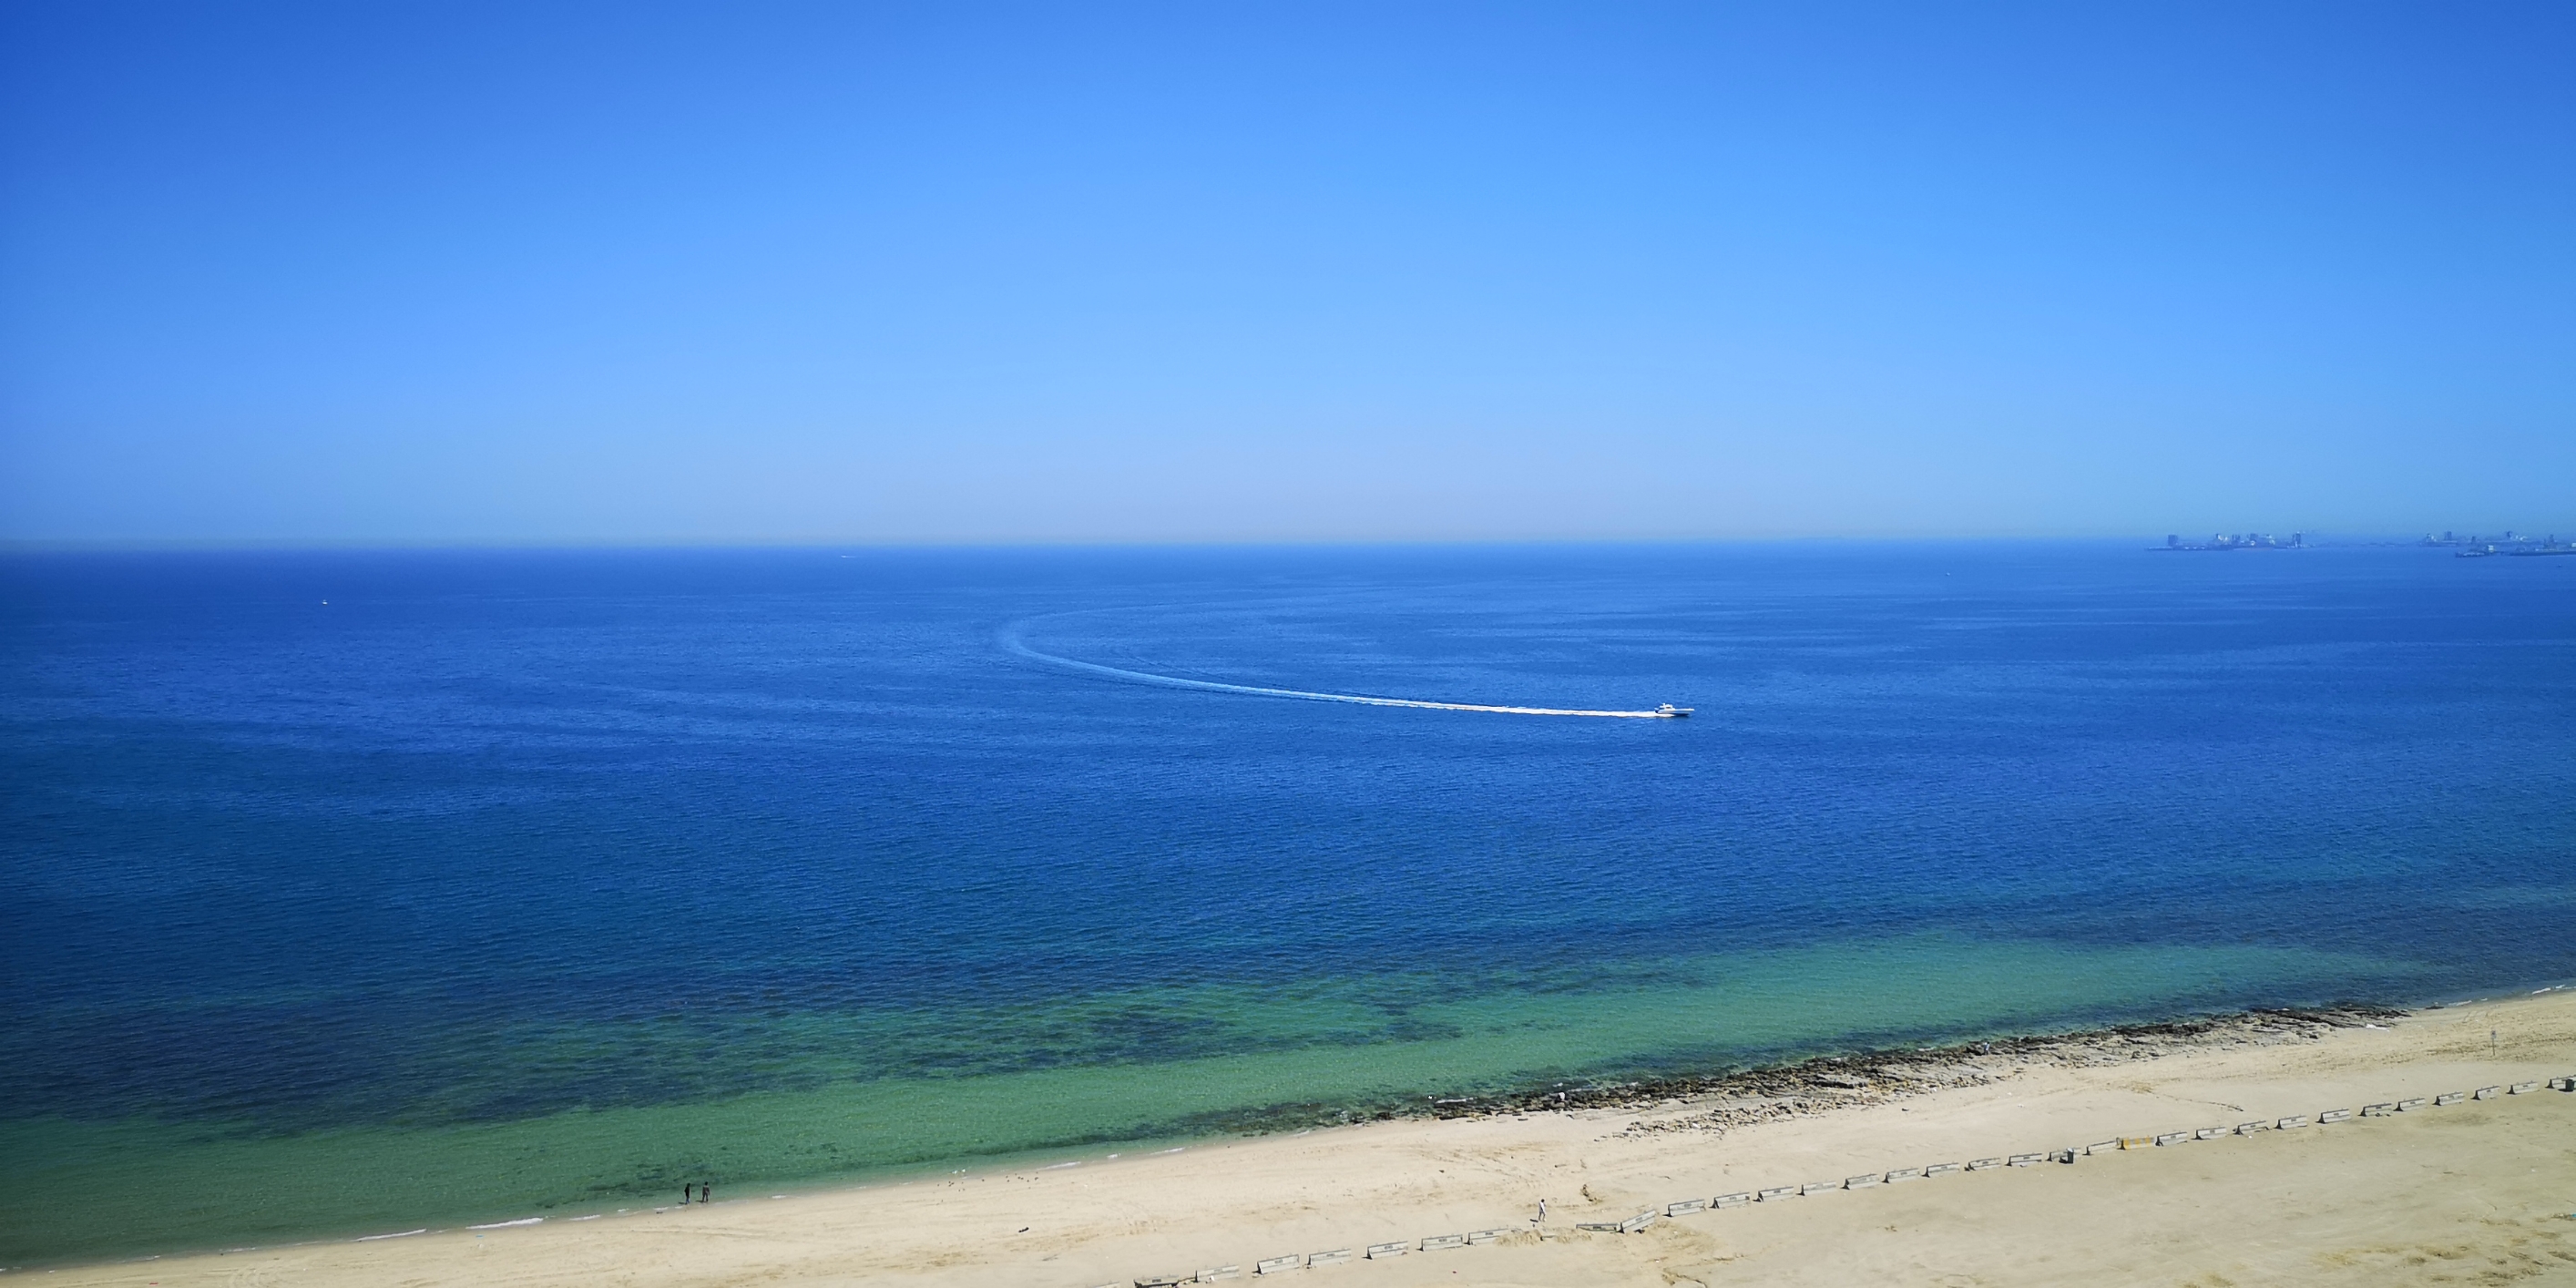 科威特曼卡夫海滩，优质海滩，沙滩海浪，希尔顿酒店里各色外国人在此度假，游艇俱乐部也在不远处。